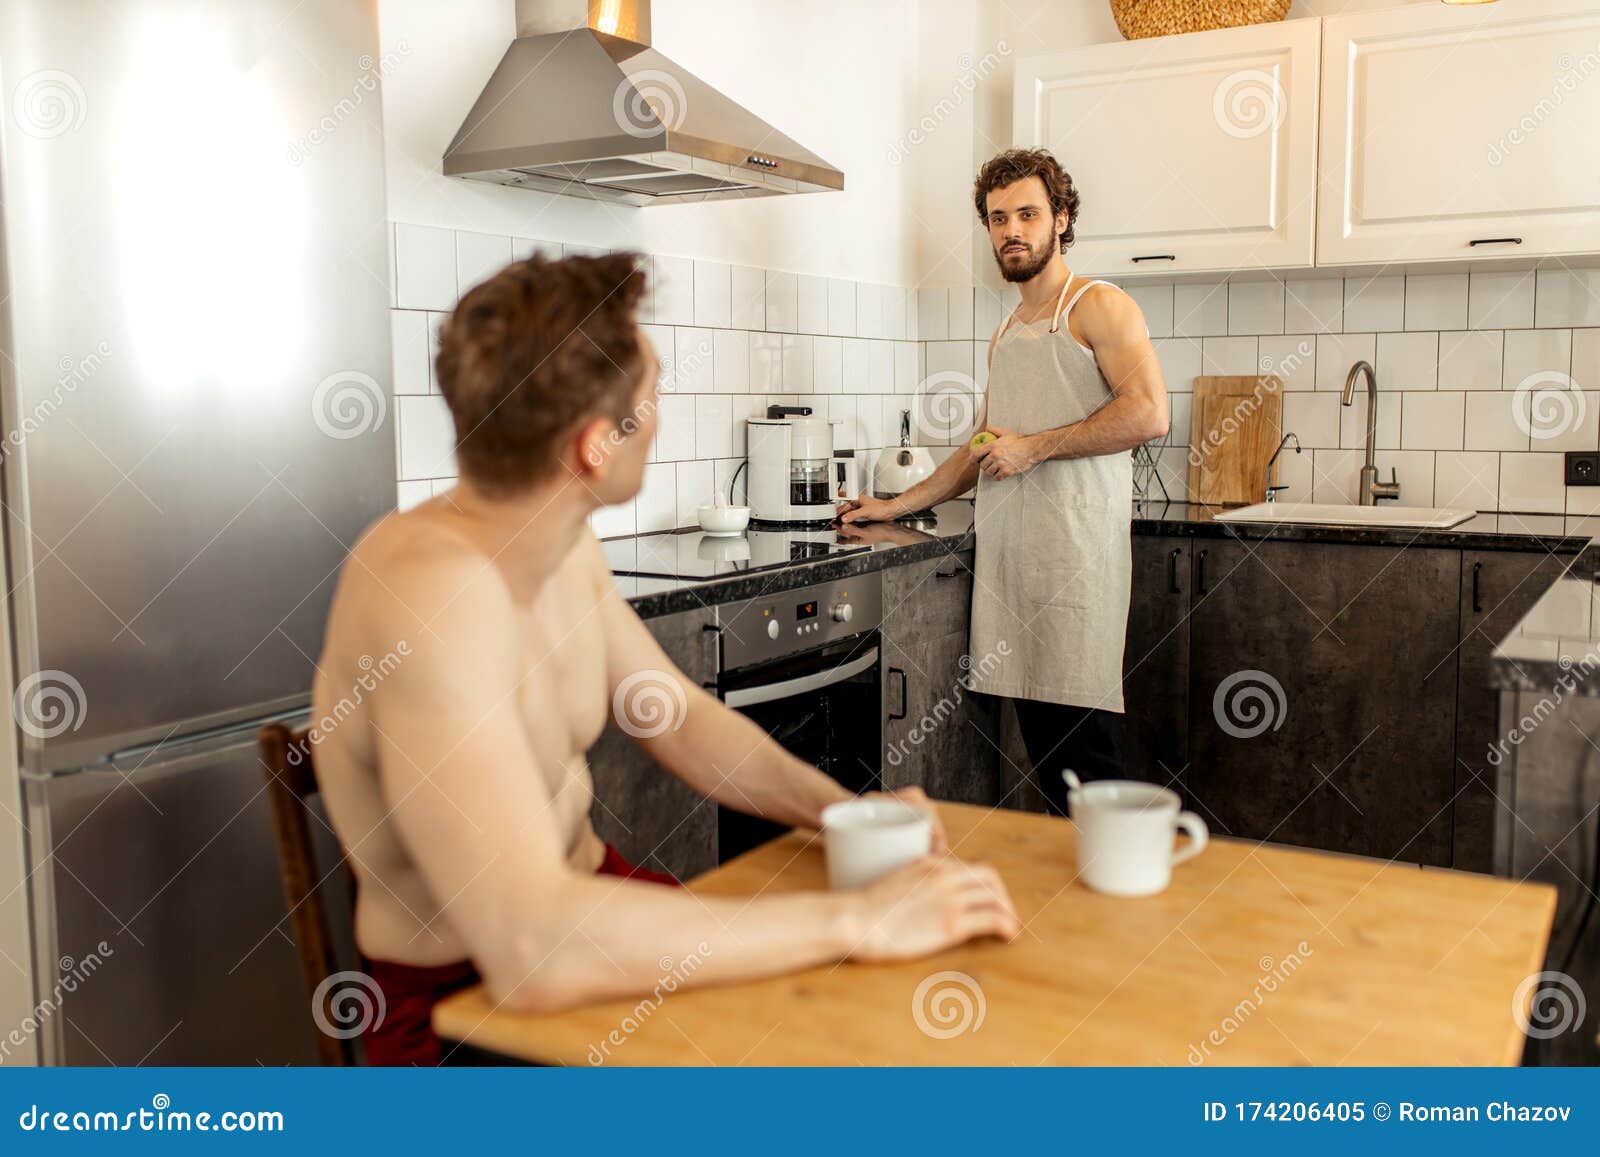 standing sex in kitchen